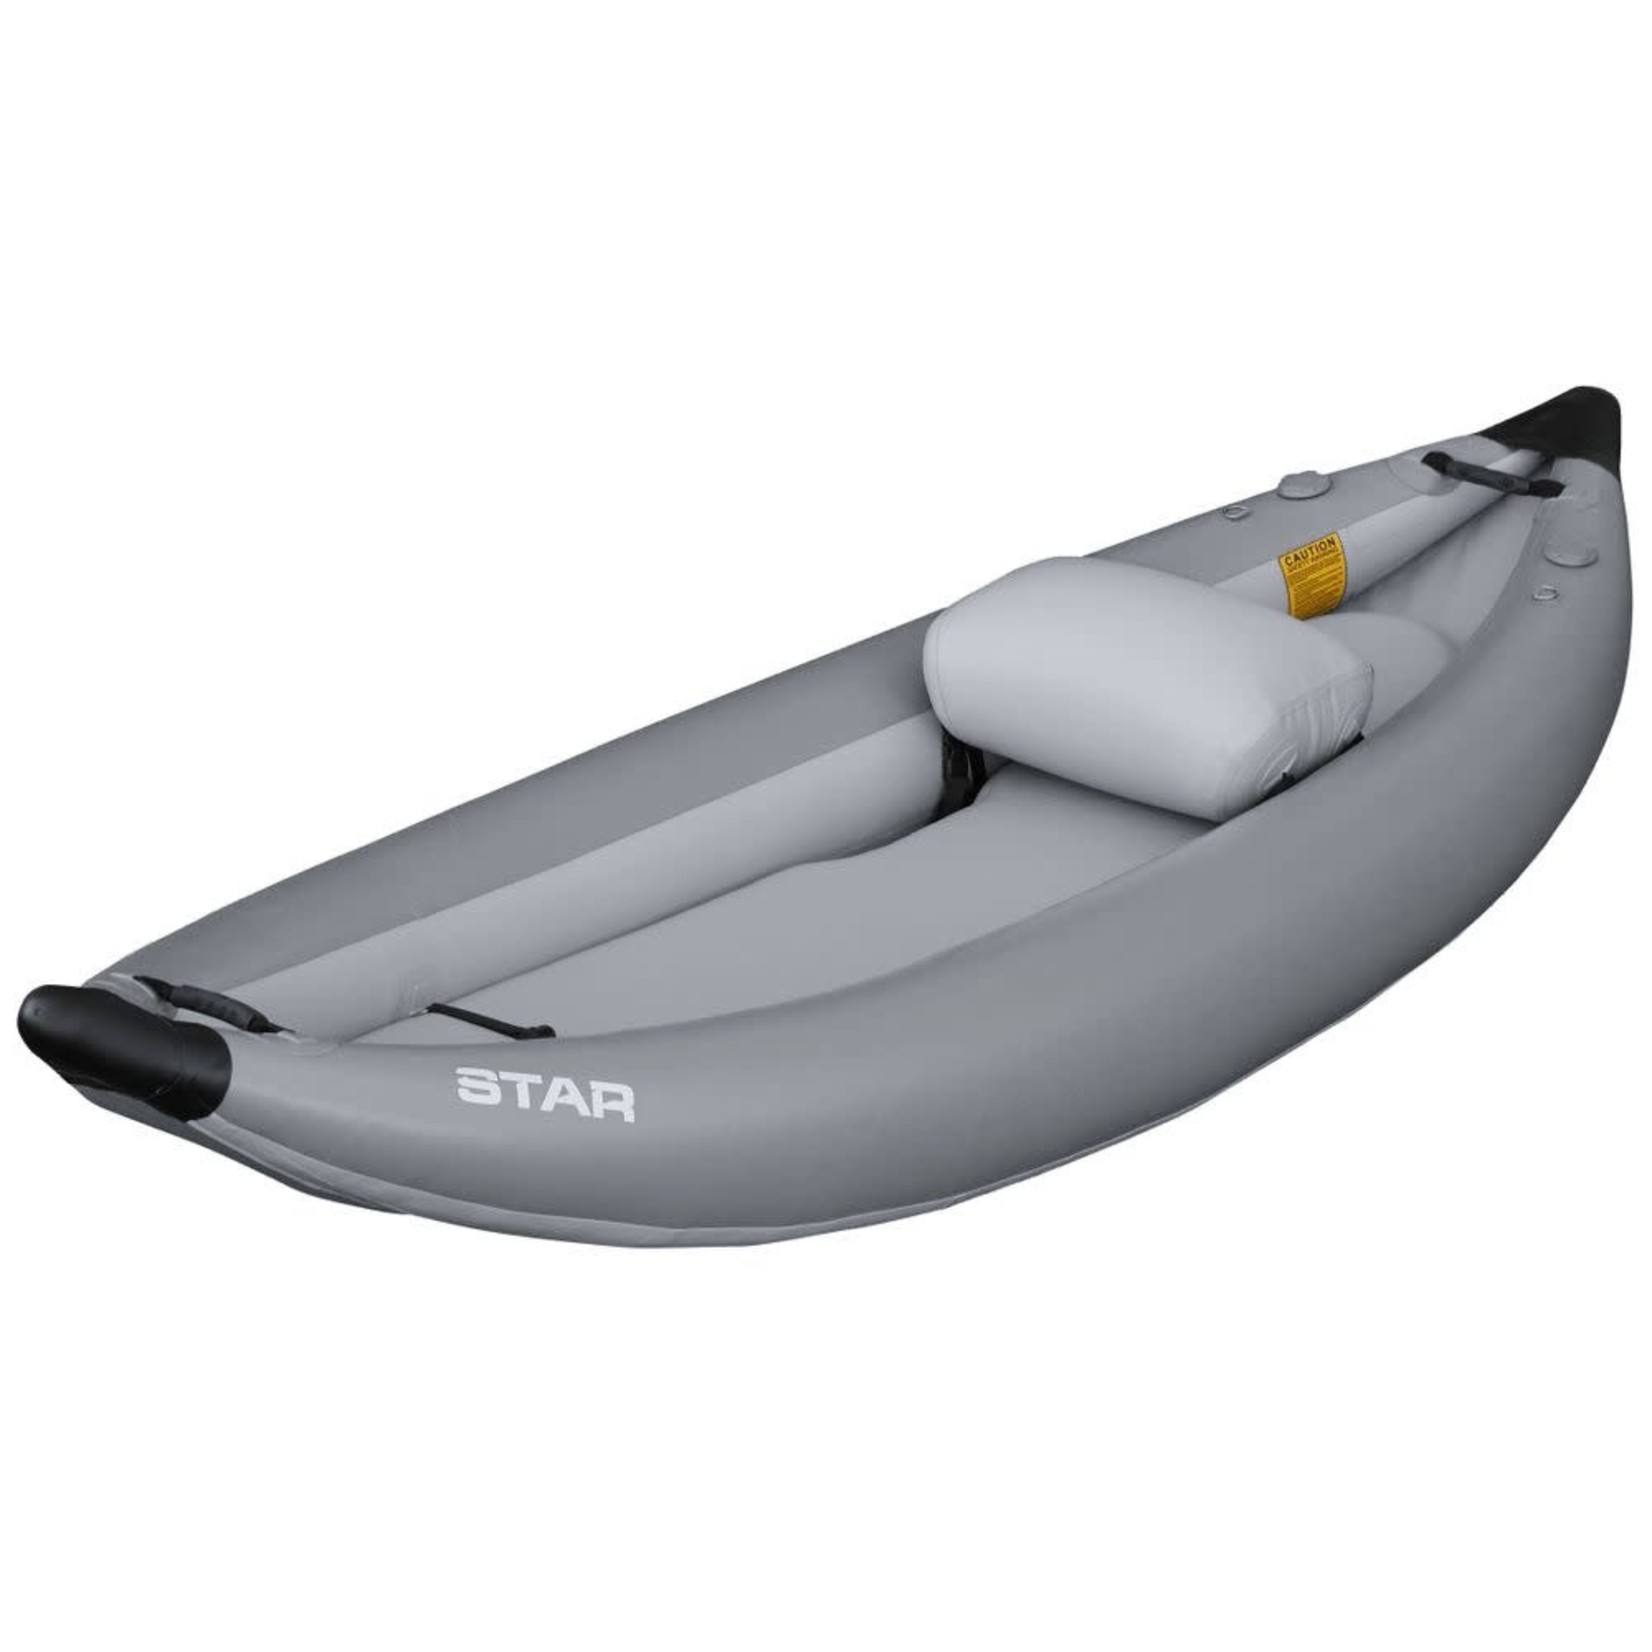 STAR STAR Outlaw I Inflatable Kayak